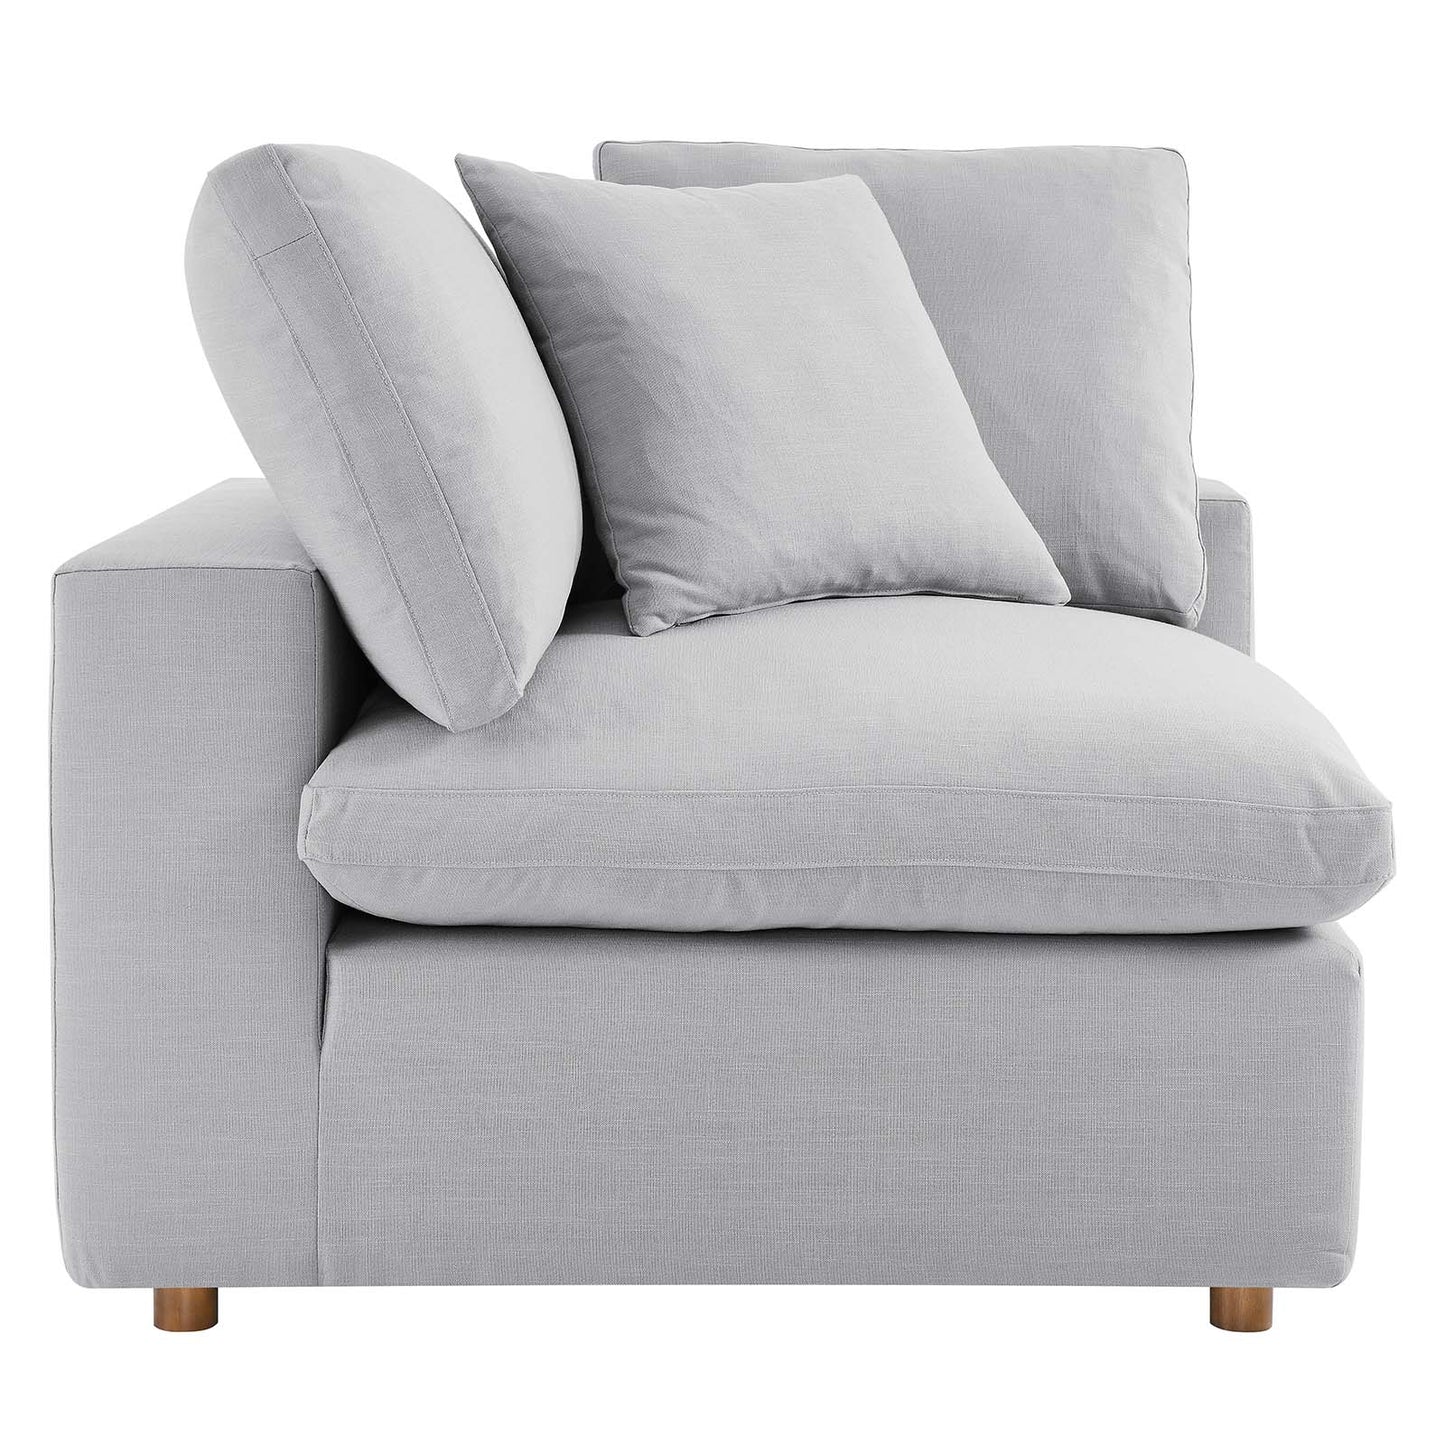 Commix Down Filled Overstuffed 6-Piece Sectional Sofa Light Gray EEI-5761-LGR